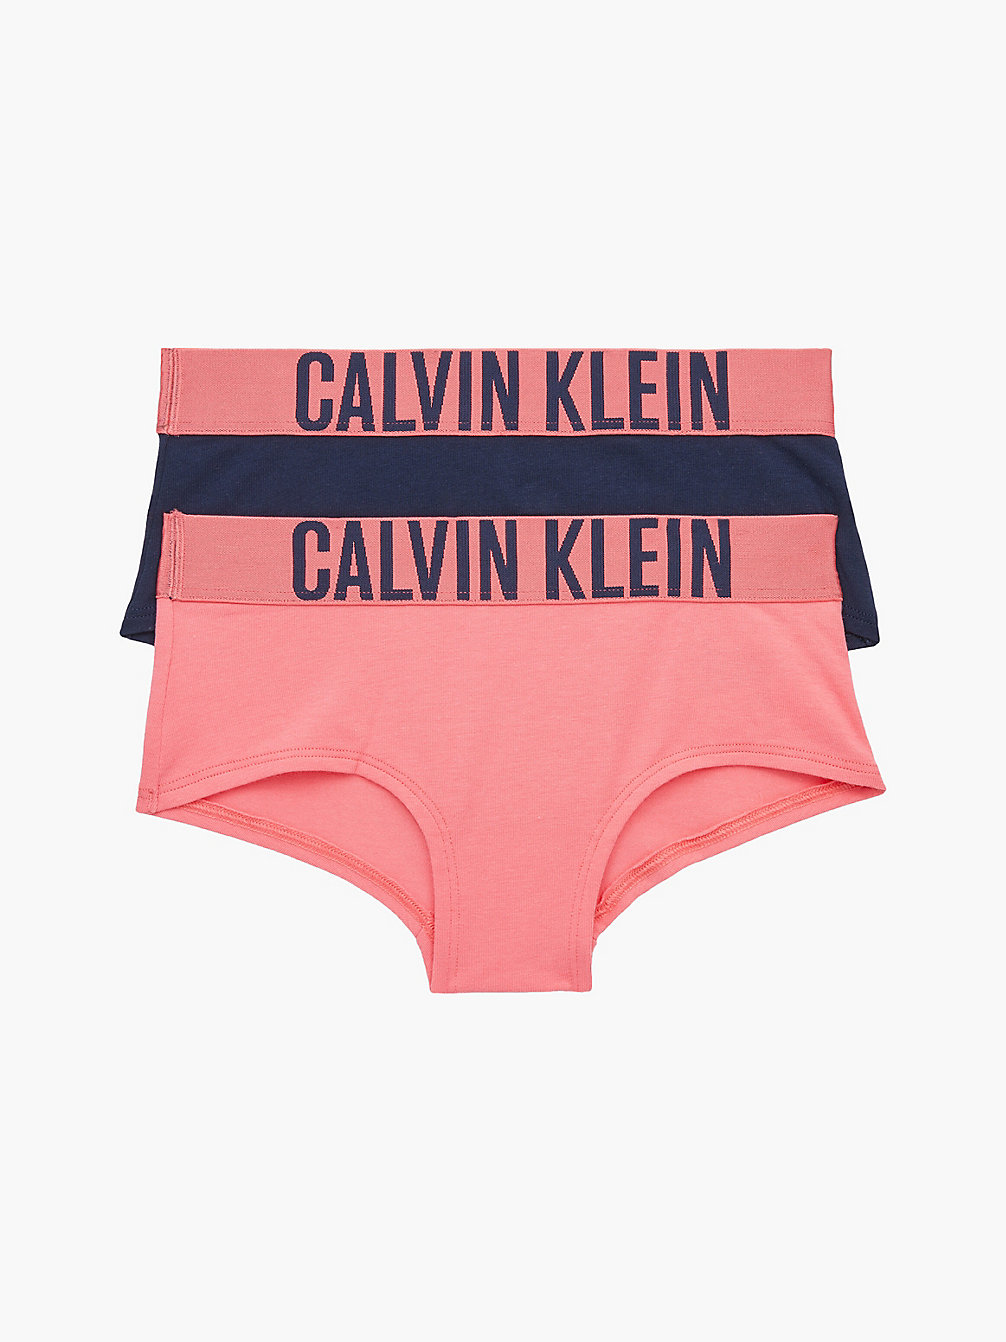 PINKDAWN/NAVYIRIS 2 Pack Girls Hipster Panties - Intense Power undefined girls Calvin Klein